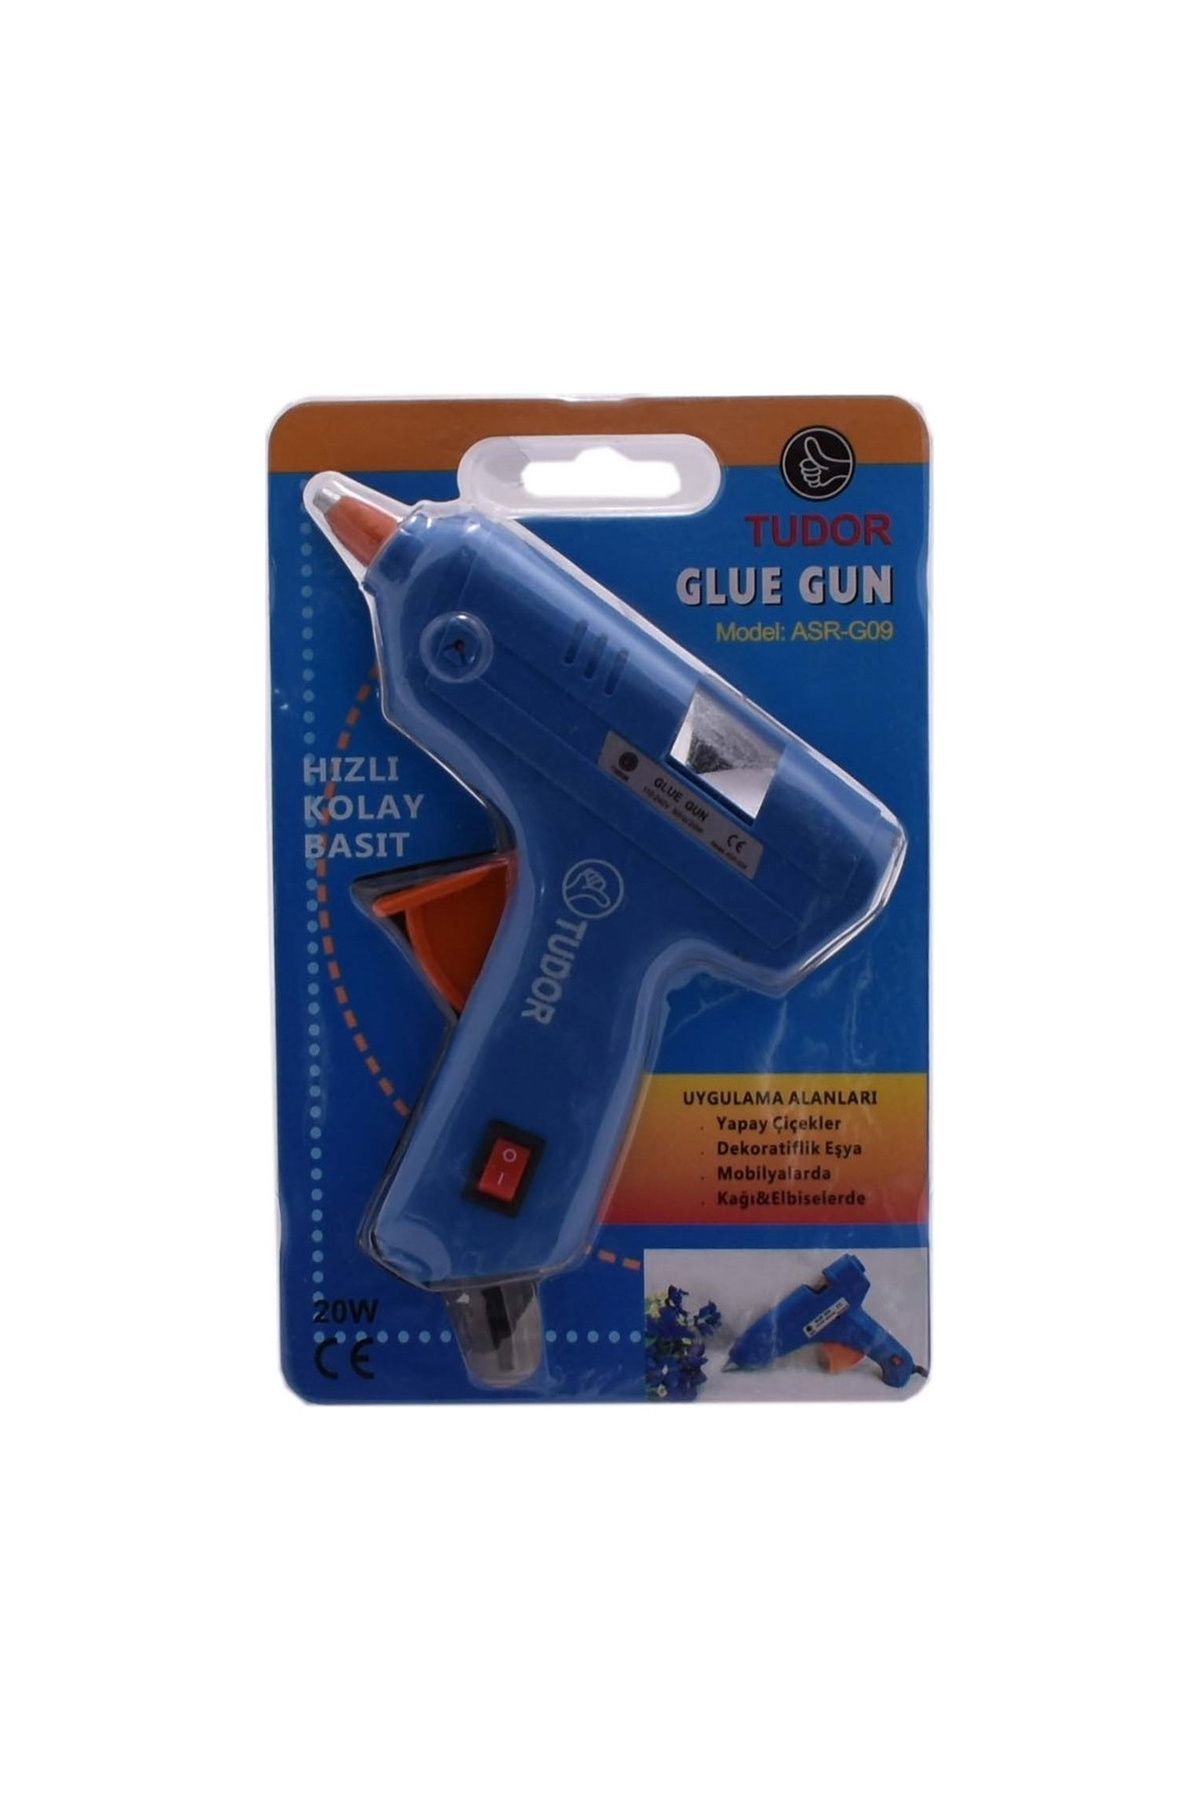 MELFSHOP Küçük Mum Silikon Tabancası Asr-G09 - Glue Gun